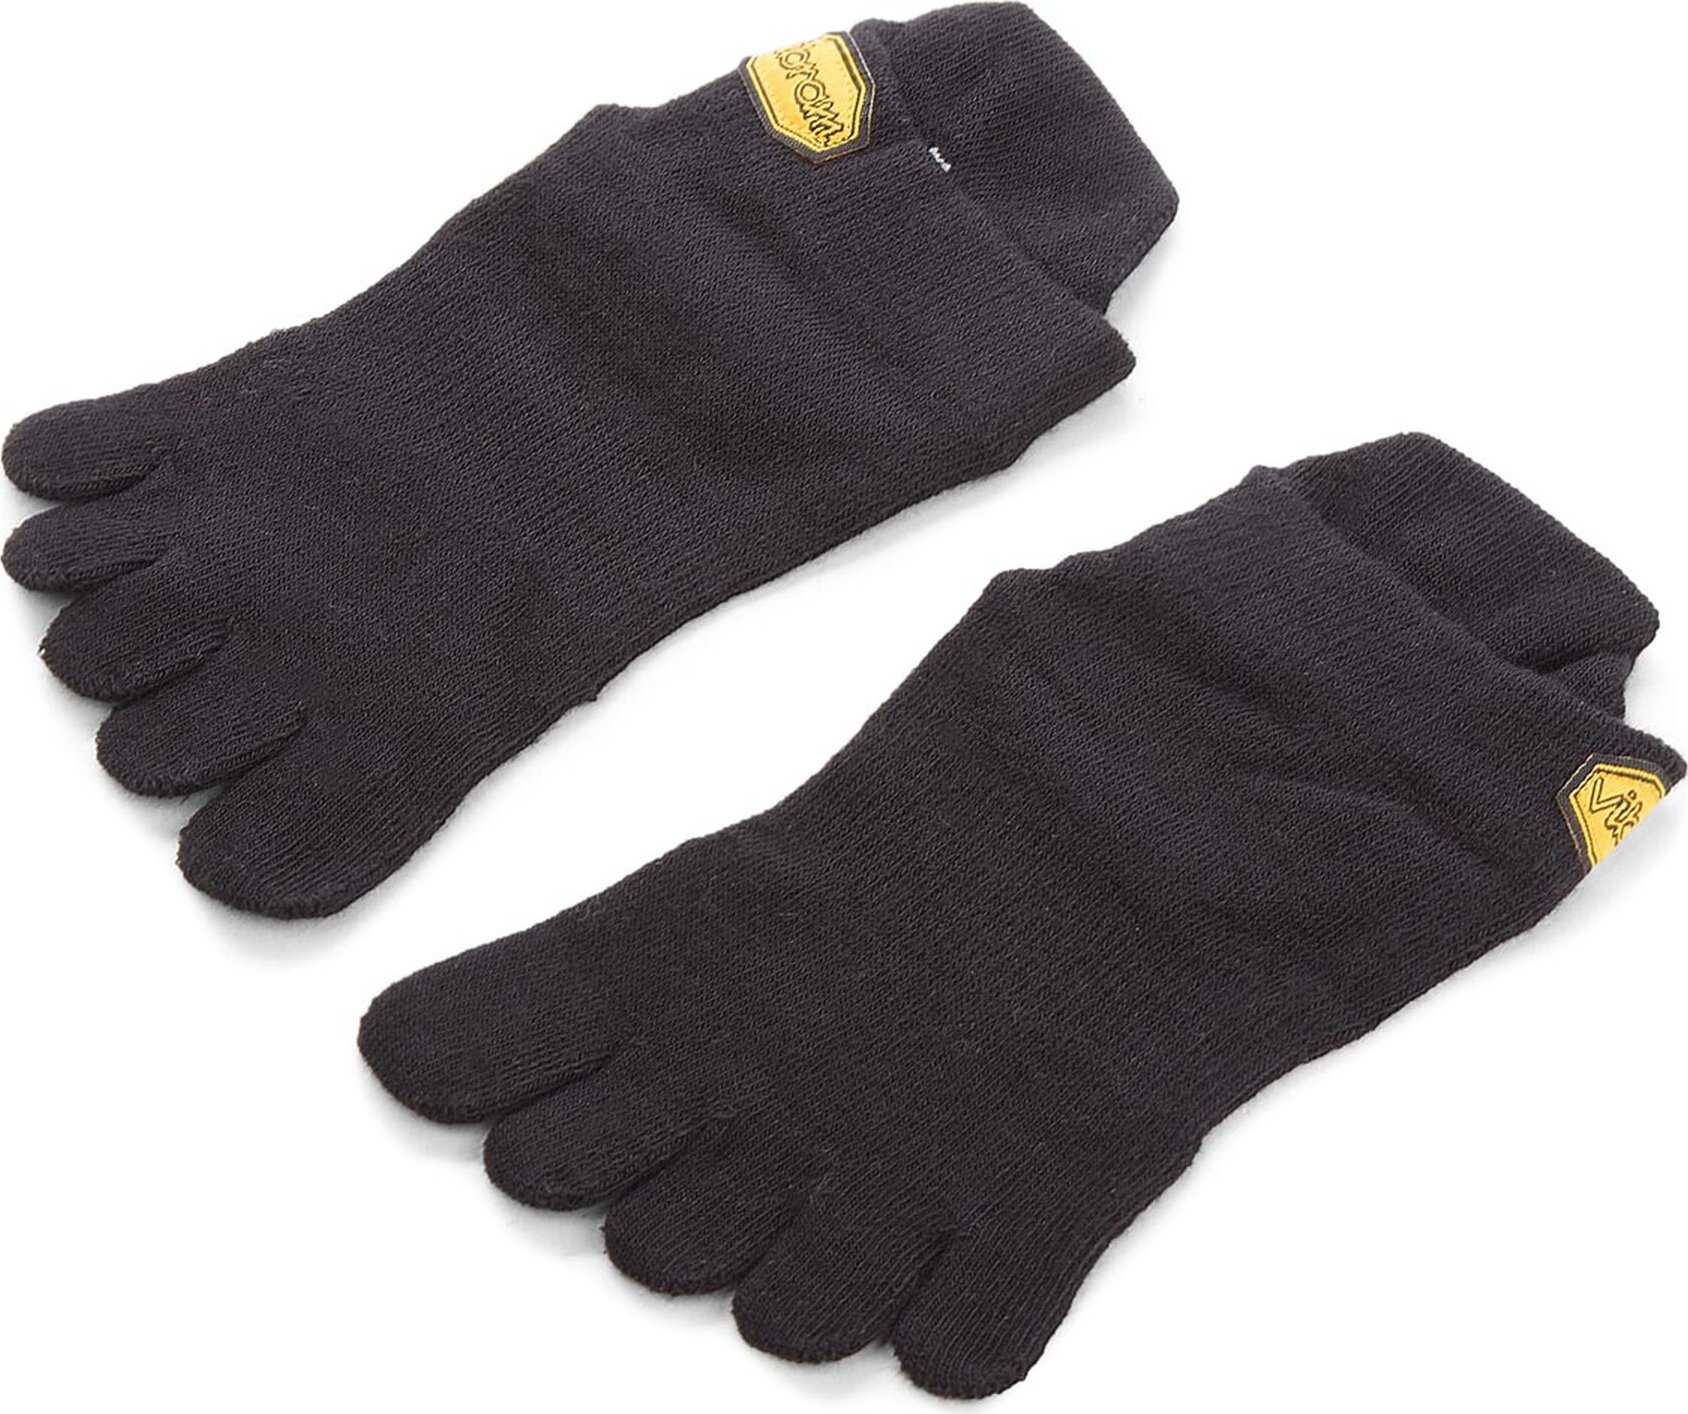 Nízké ponožky Unisex Vibram Fivefingers Ahtletic No Show S15N02 S Black